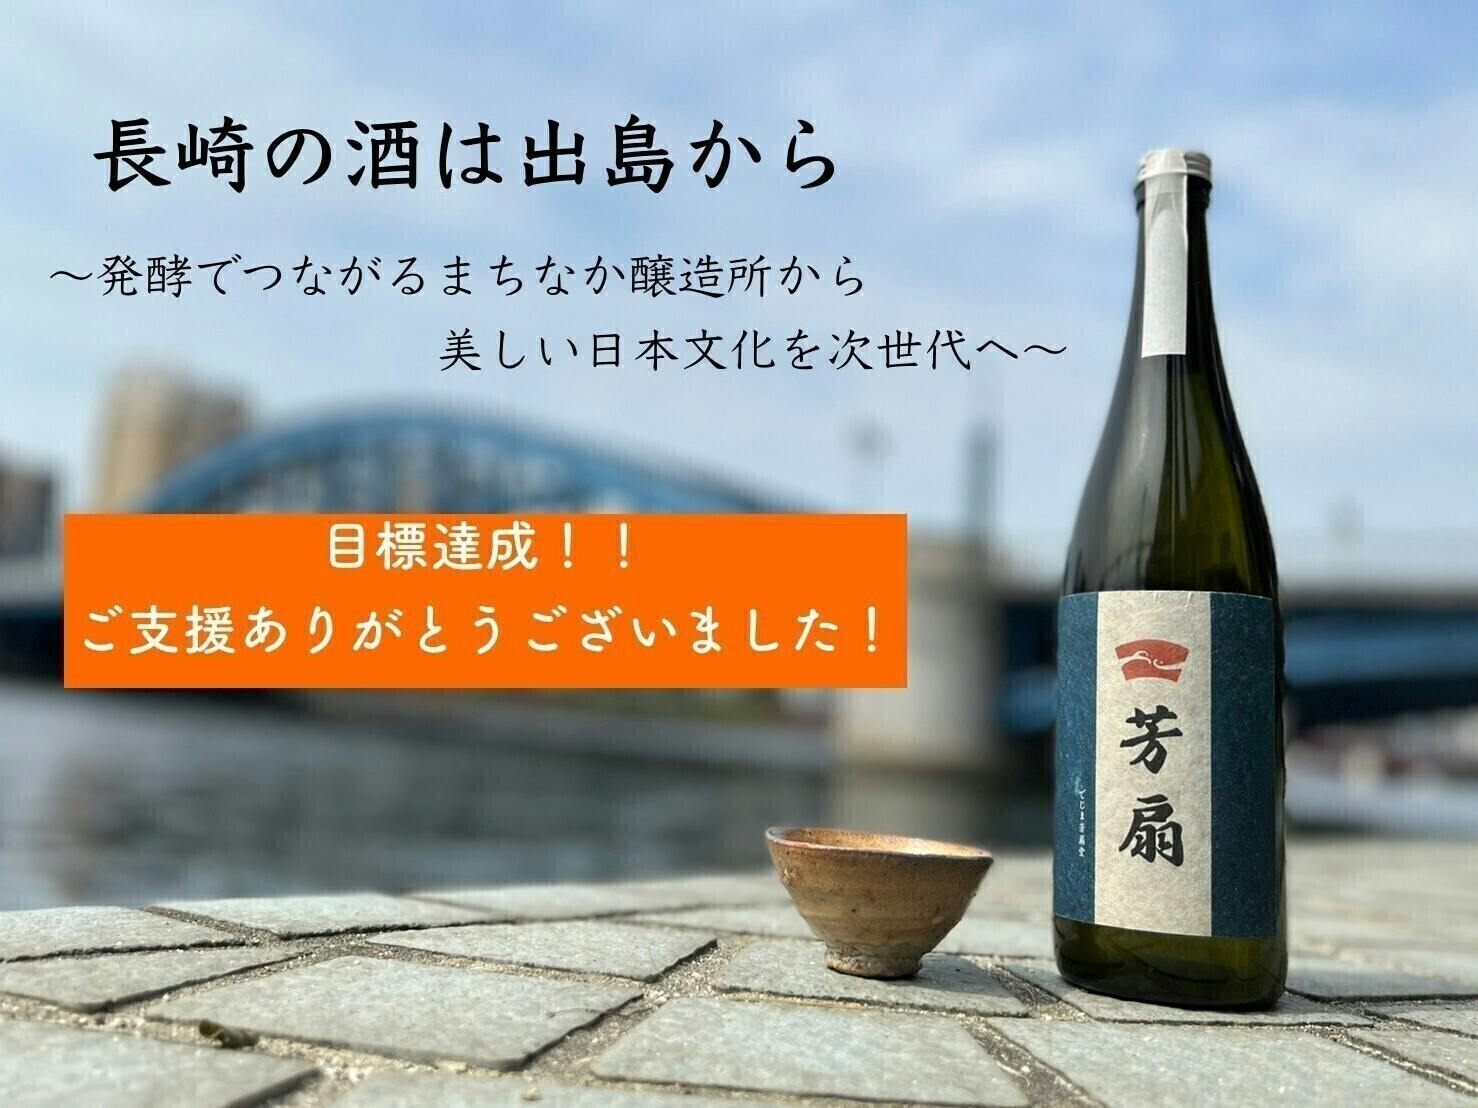 長崎の酒は出島から〜発酵でつながるまちなか醸造所から美しい日本文化